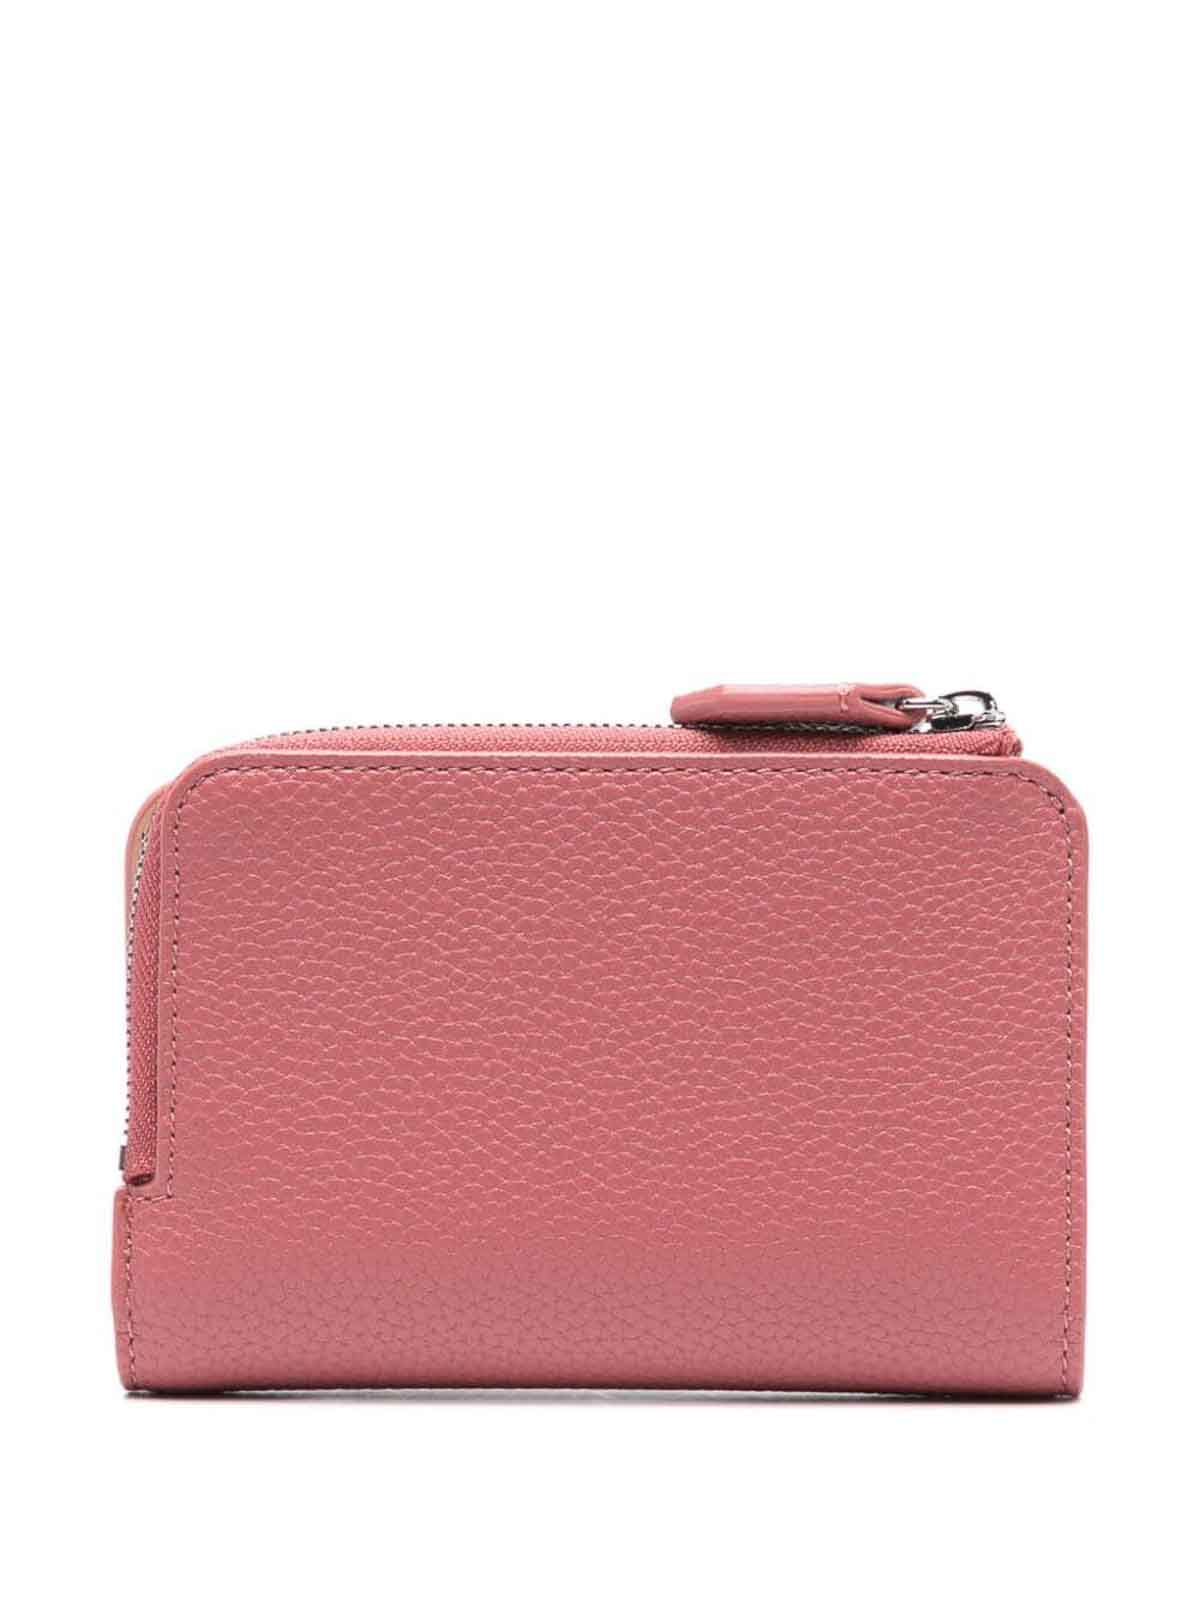 Shop Emporio Armani Credit Card Case In Pink